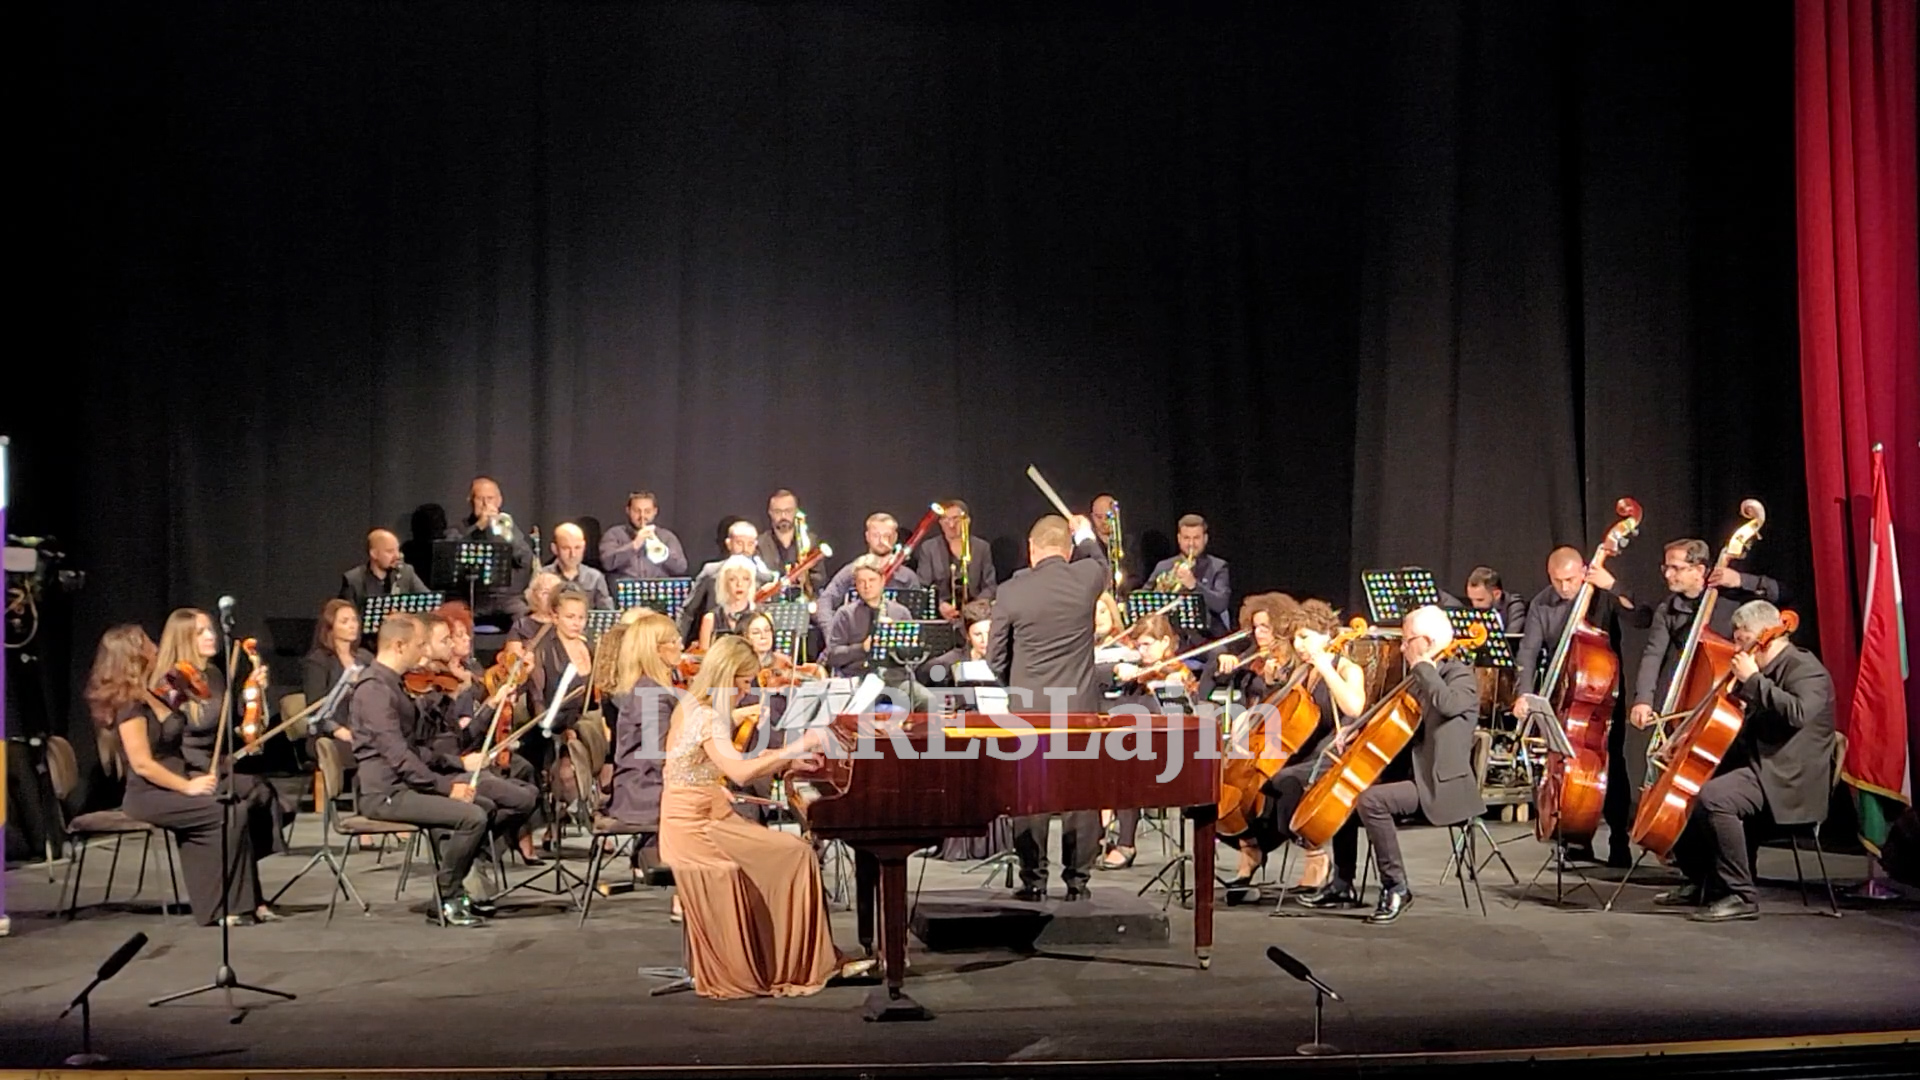 Java e kulturës hungareze përmbyllet në Durrës me një koncert gala (VIDEO)